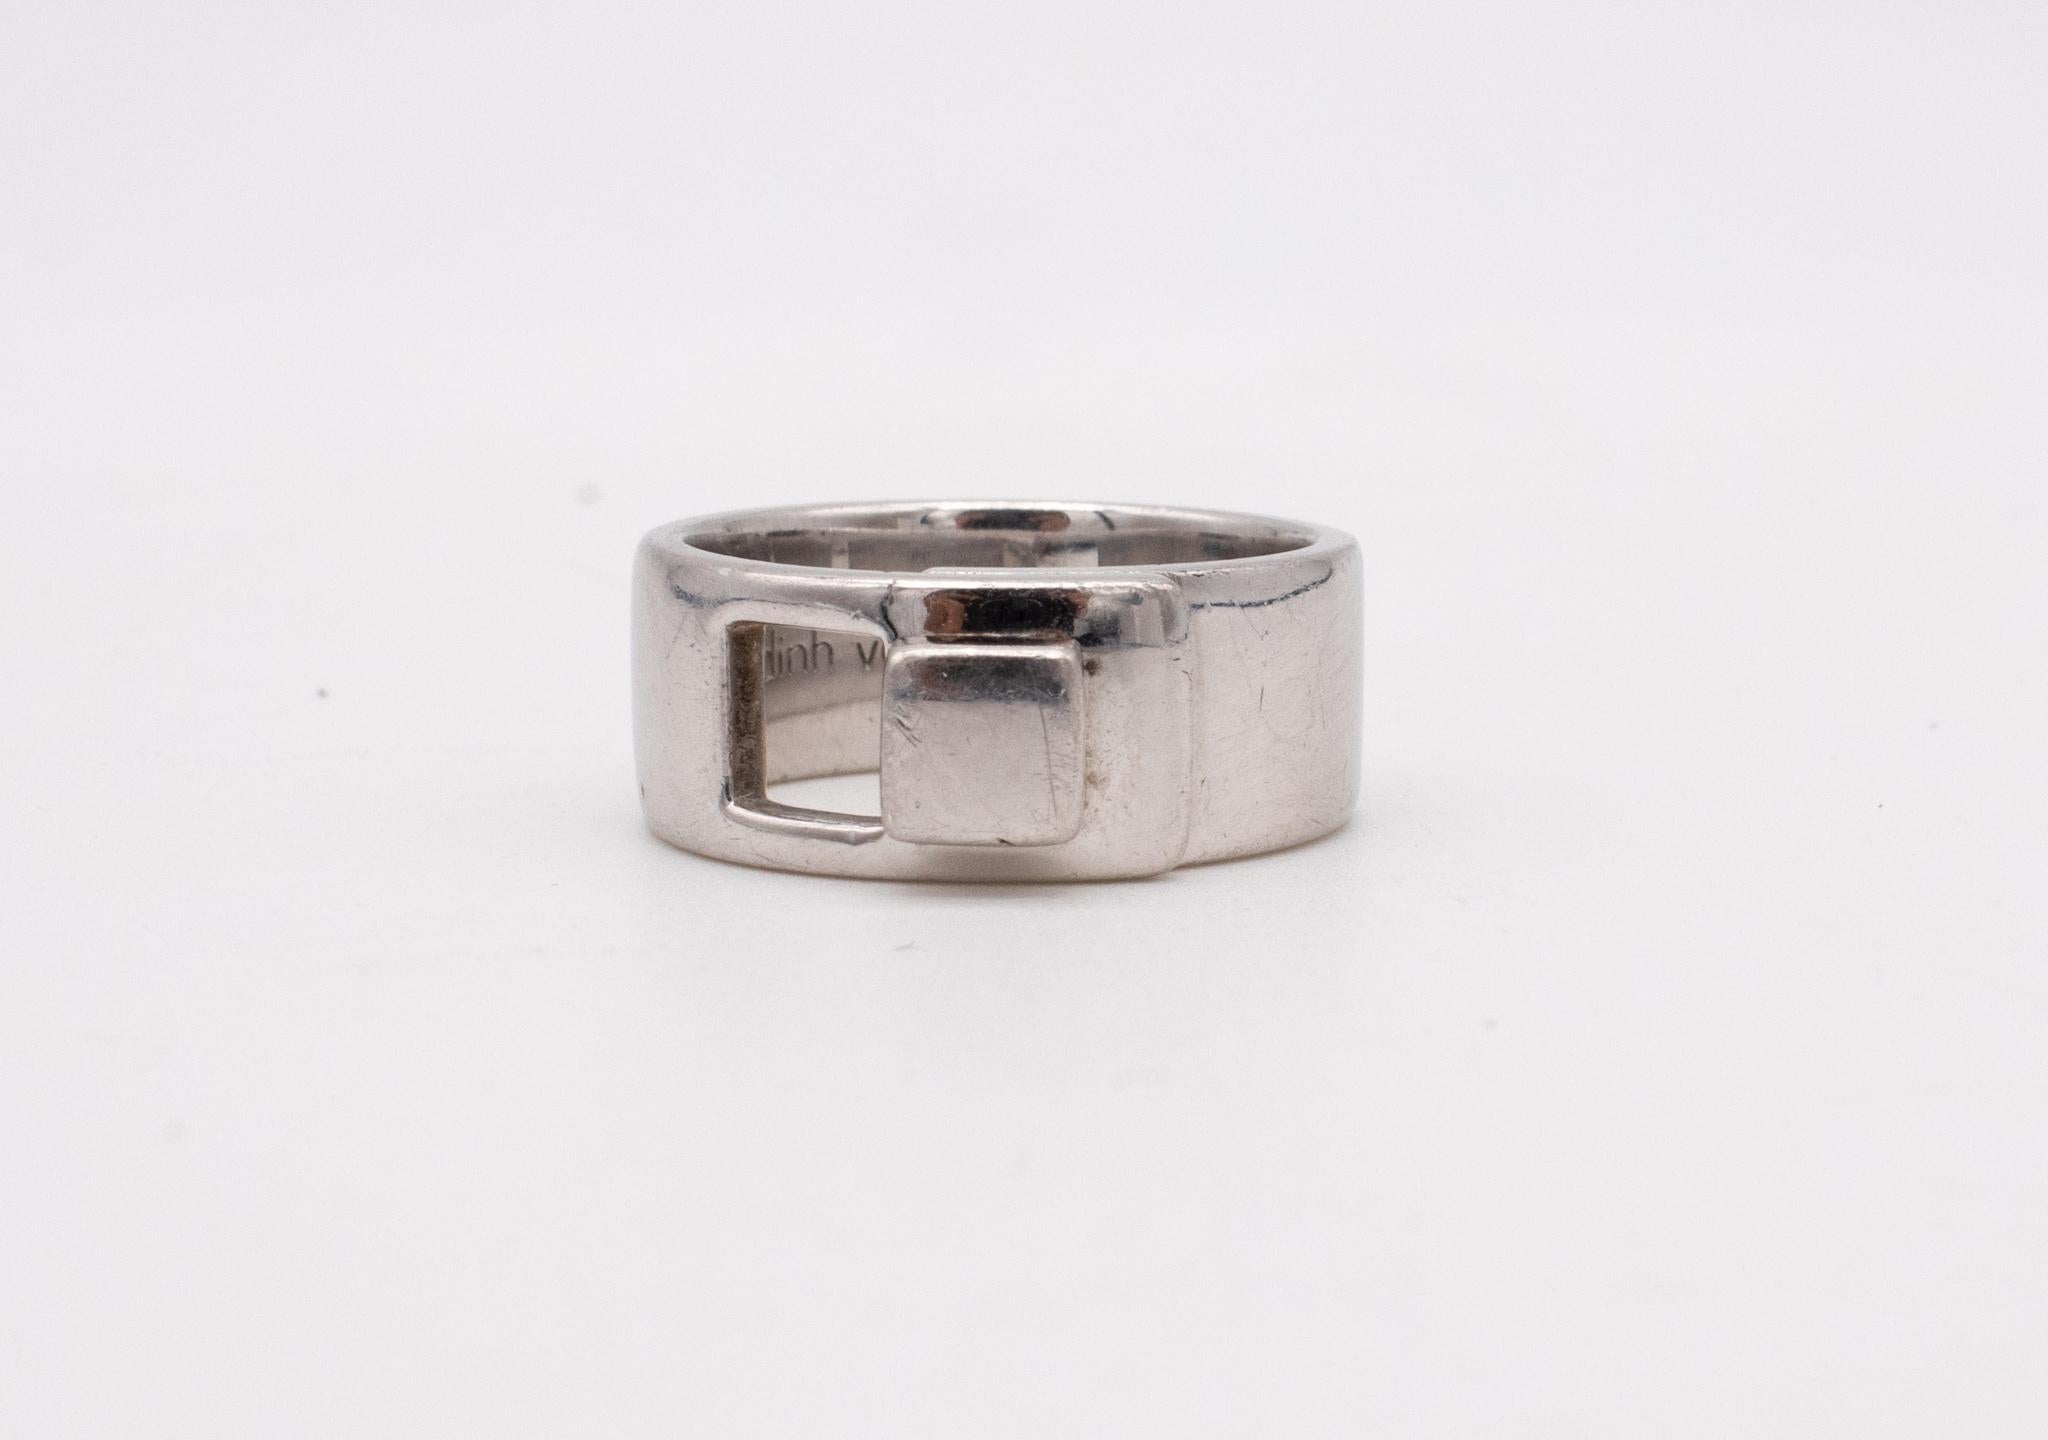 Dinh Van Paris Vintage Geometric Ring In Solid .925 Sterling Silver 2